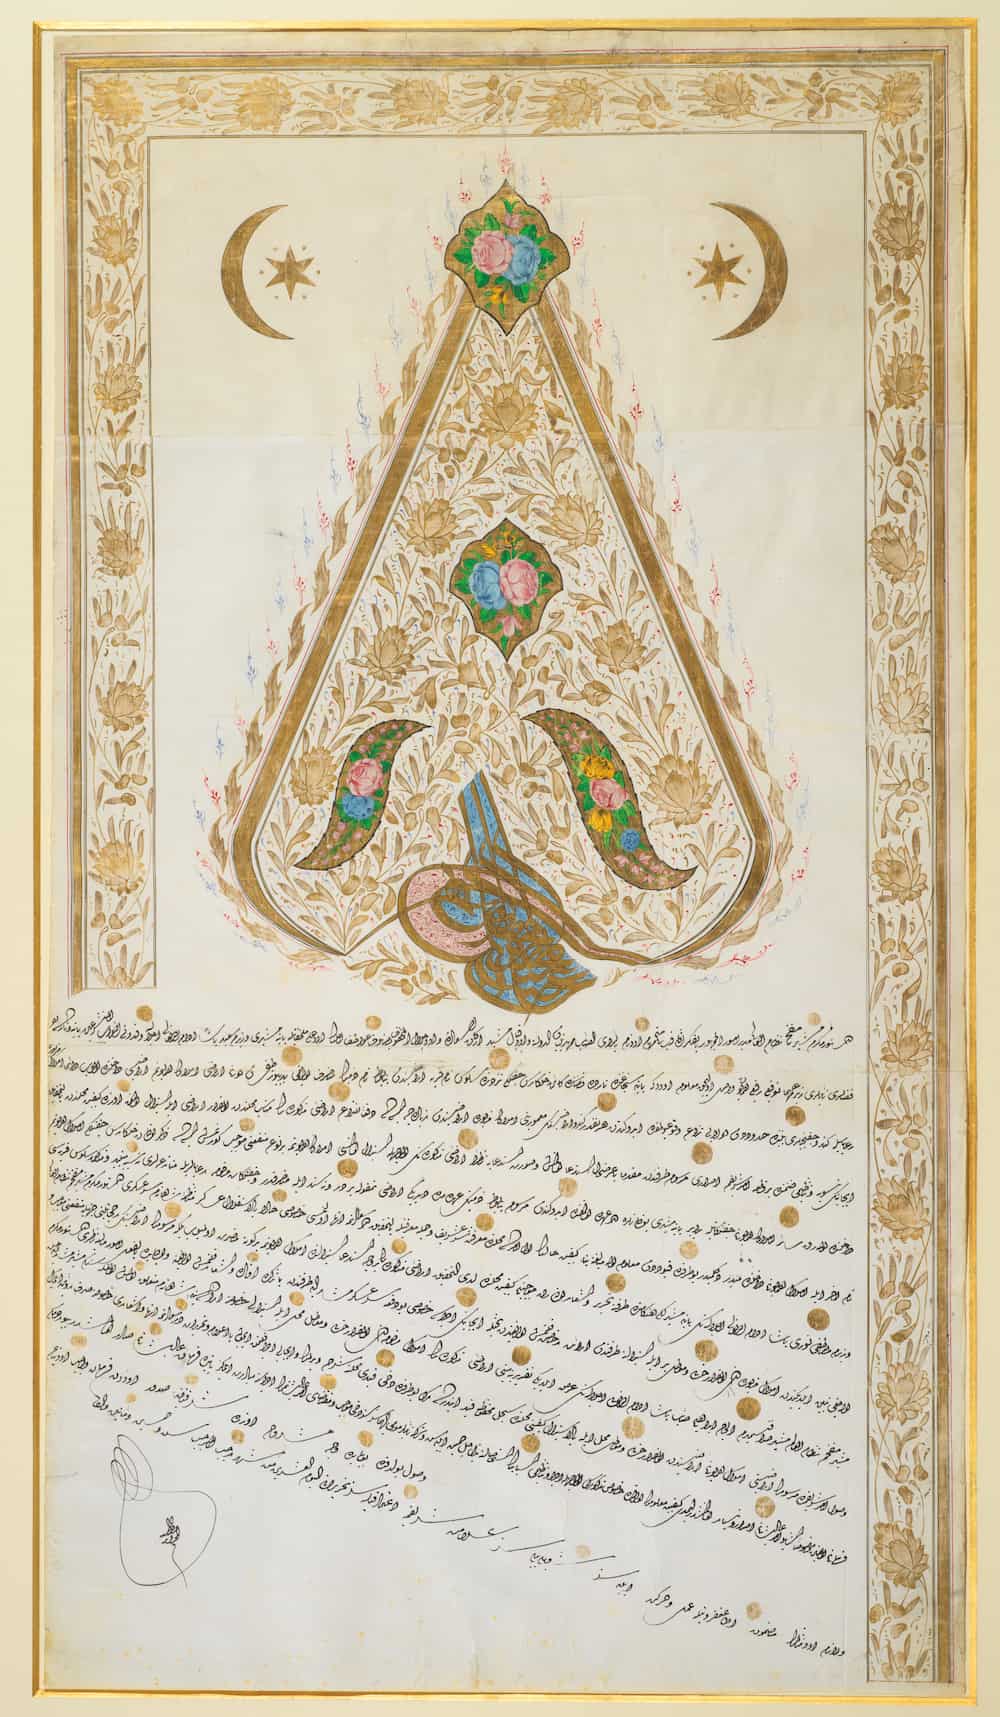 Empire Ottoman, Finement Enluminé avec le Tughra du Sultan Abdulmecid, Empire Ottoman, Daté : 1256 AH / 1839 AD